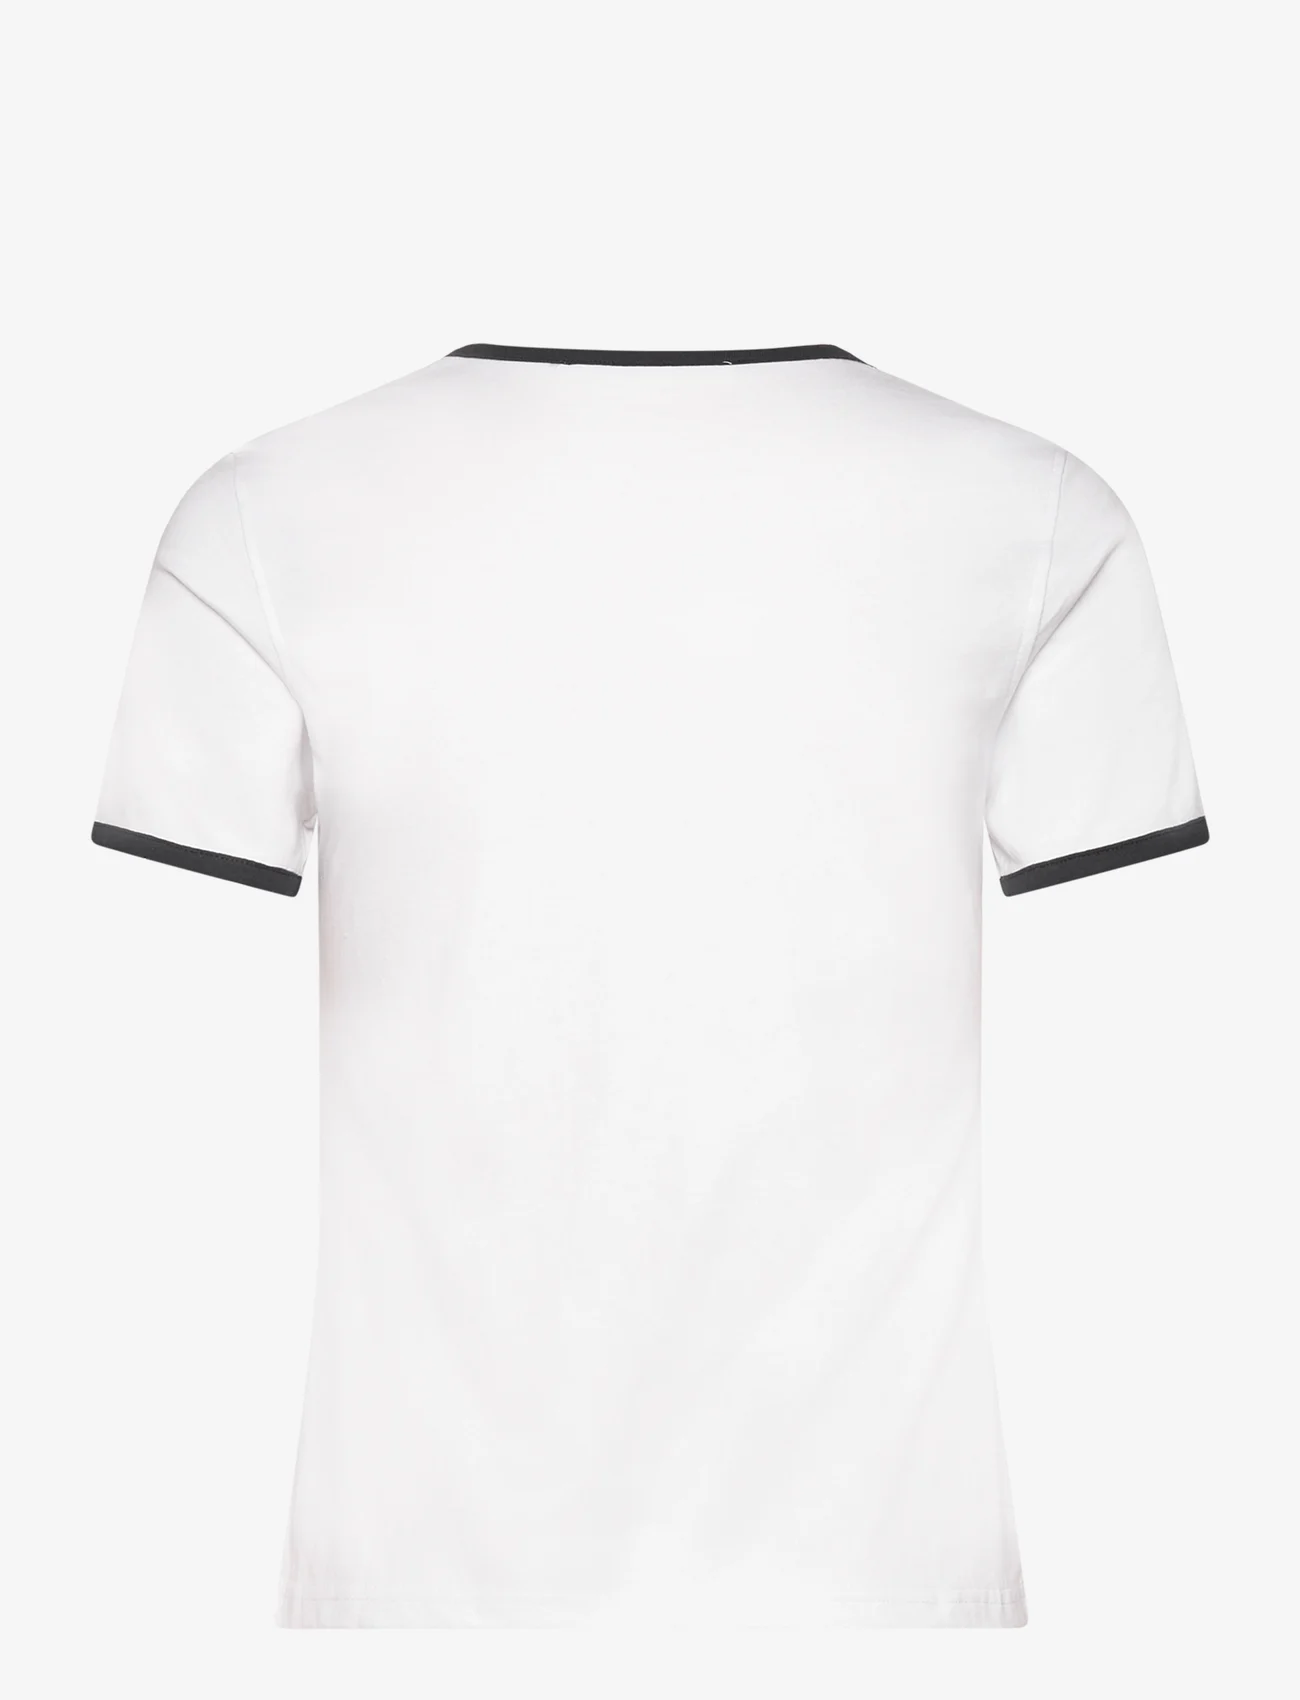 Samsøe Samsøe - Salia t-shirt 14508 - t-shirts - white - 1